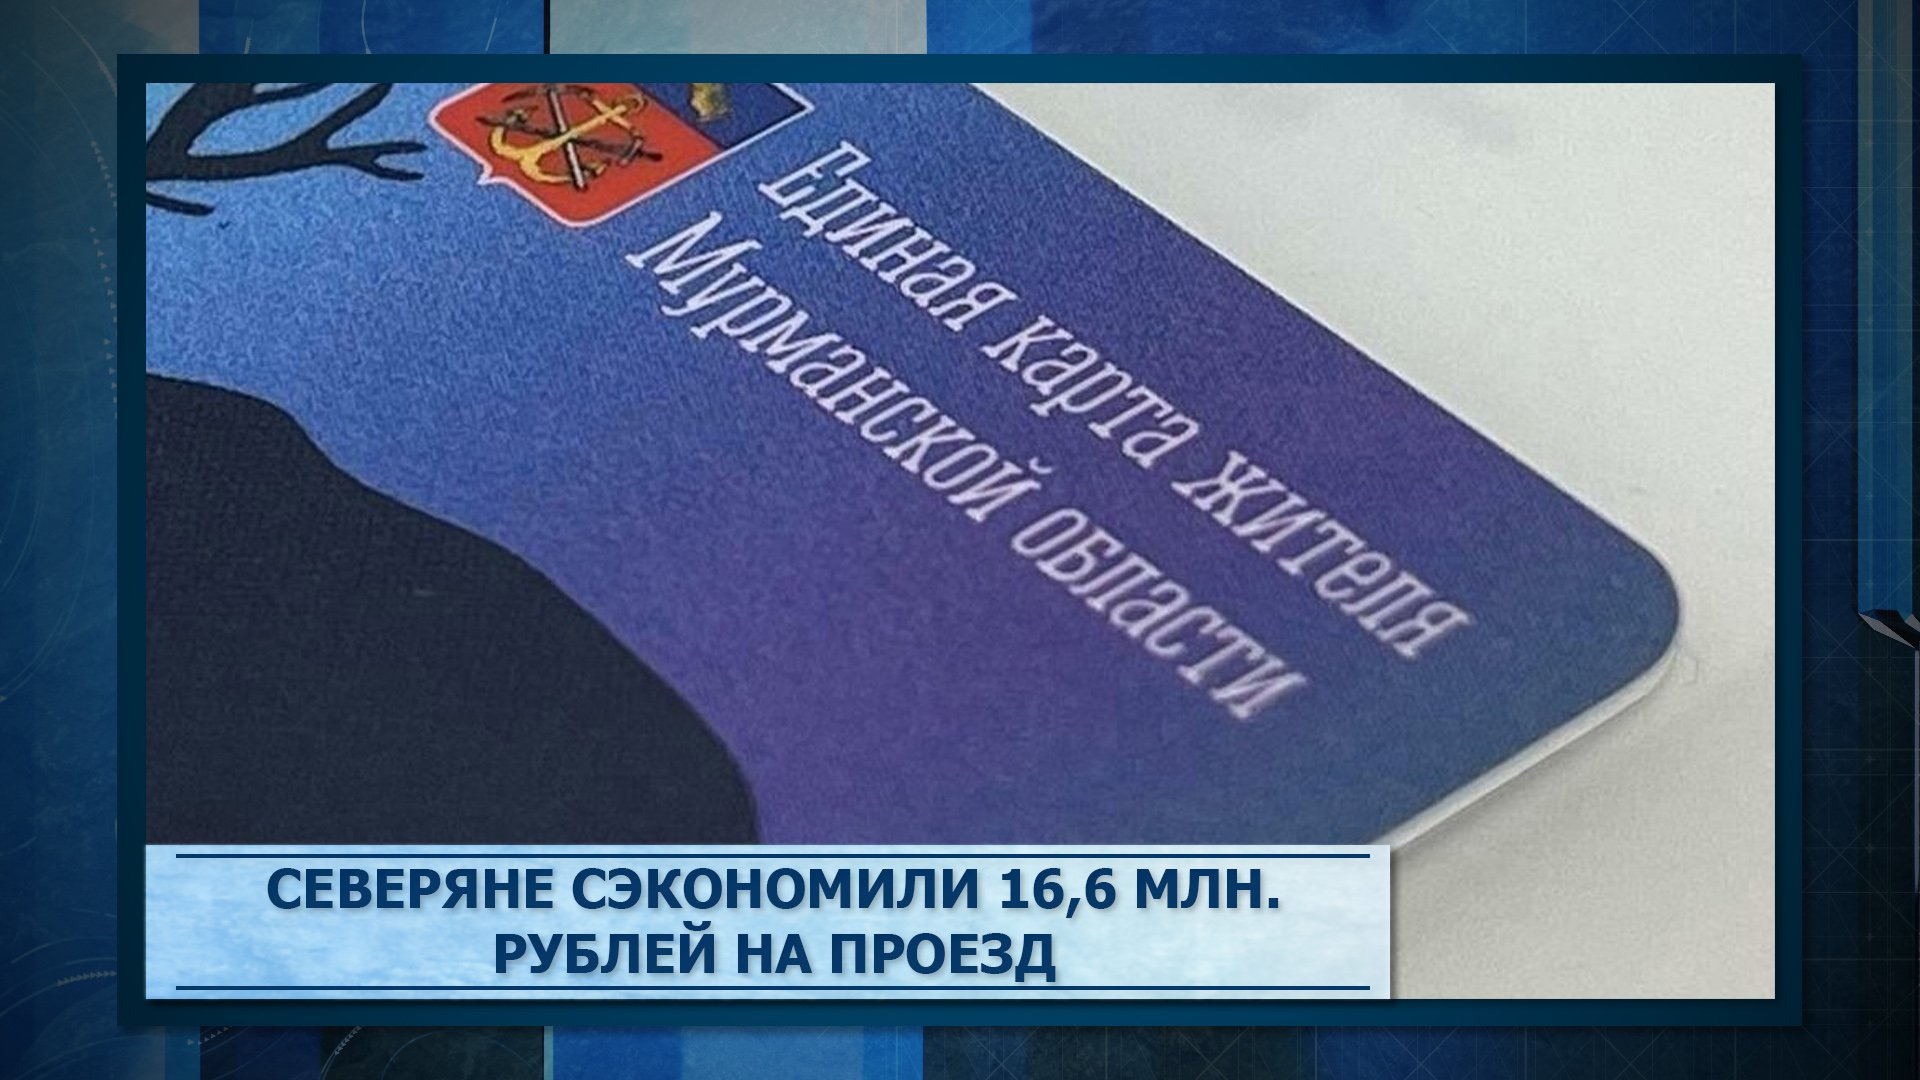 Северяне сэкономили 16,6 млн. рублей на проезд